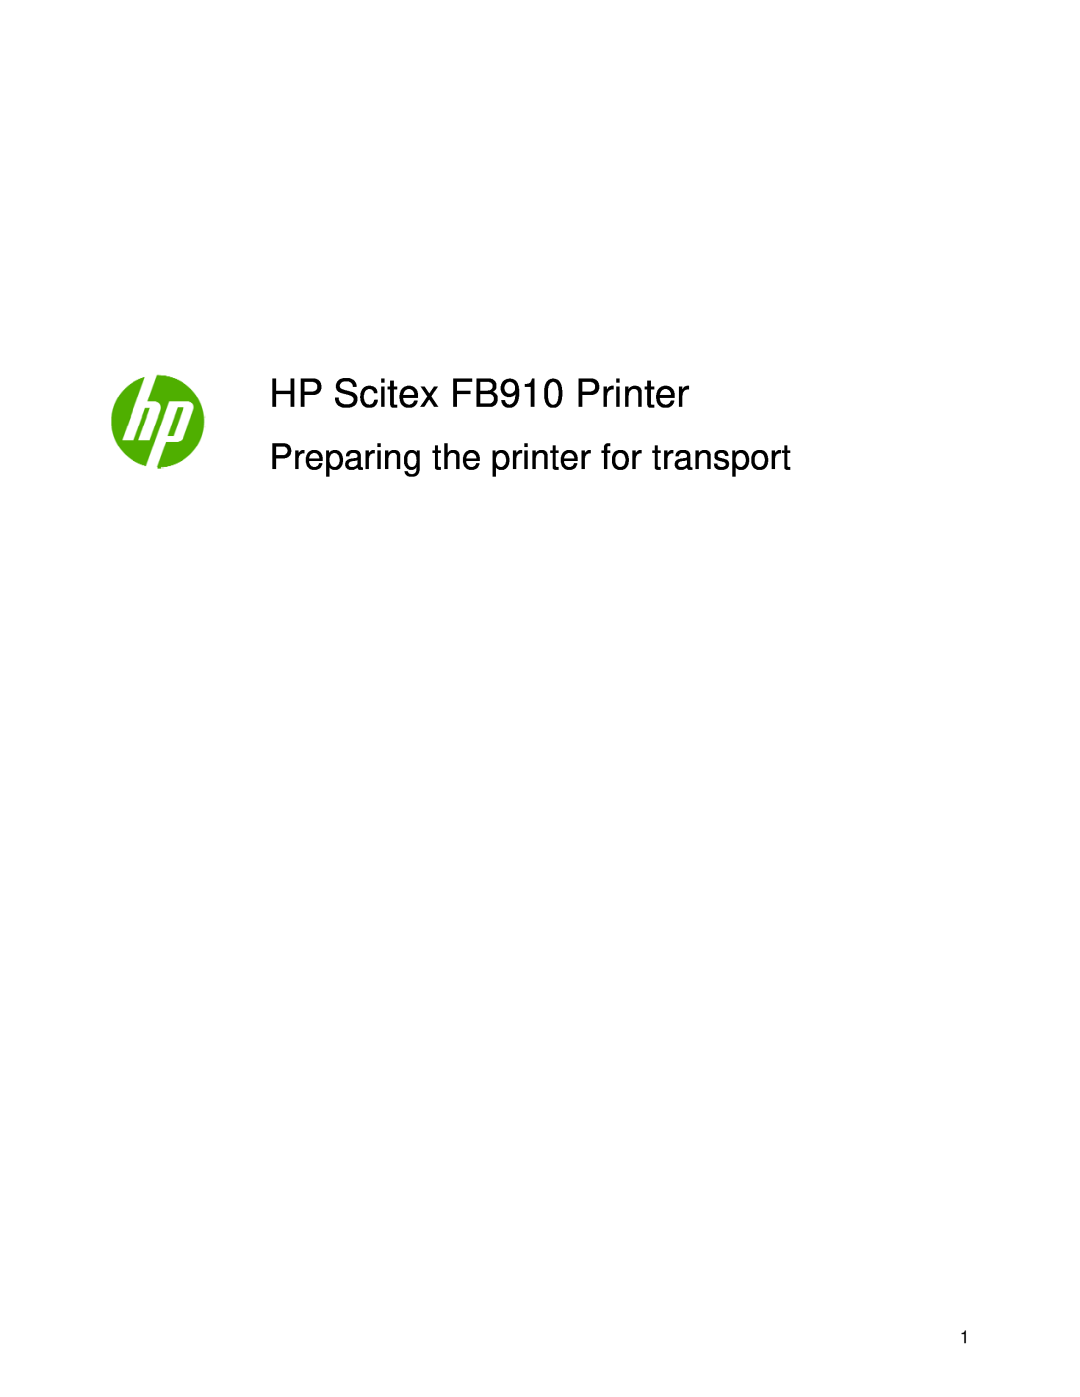 HP manual HP Scitex FB910 Printer, Preparing the printer for transport 